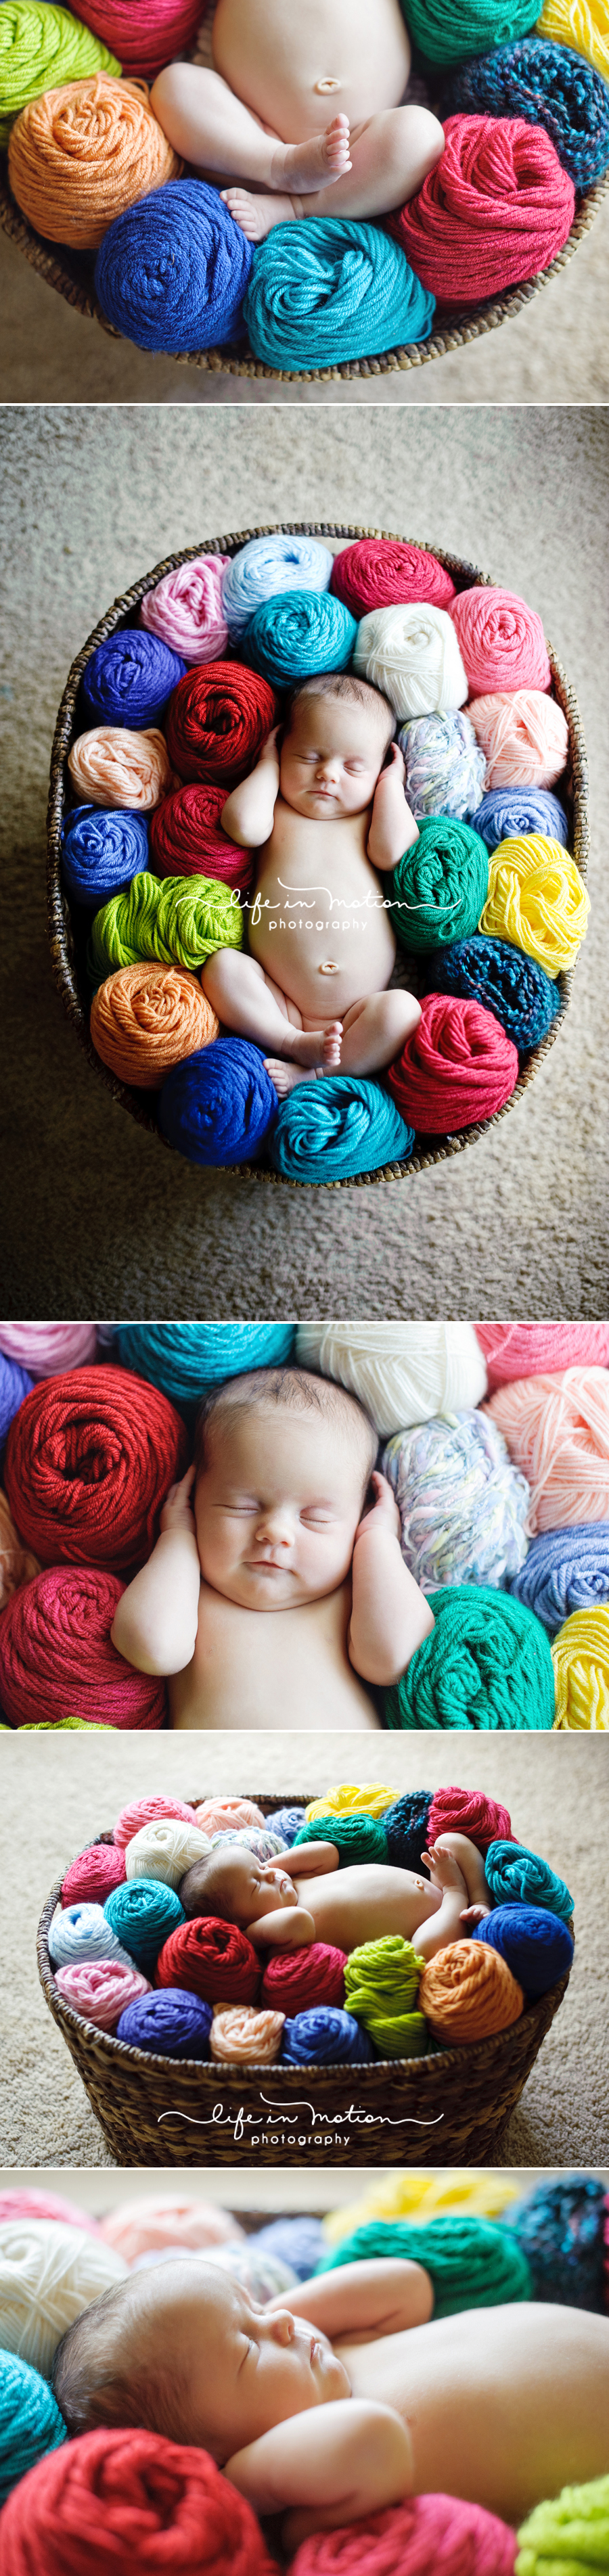 knitting_yarn_newborn_baby_photo